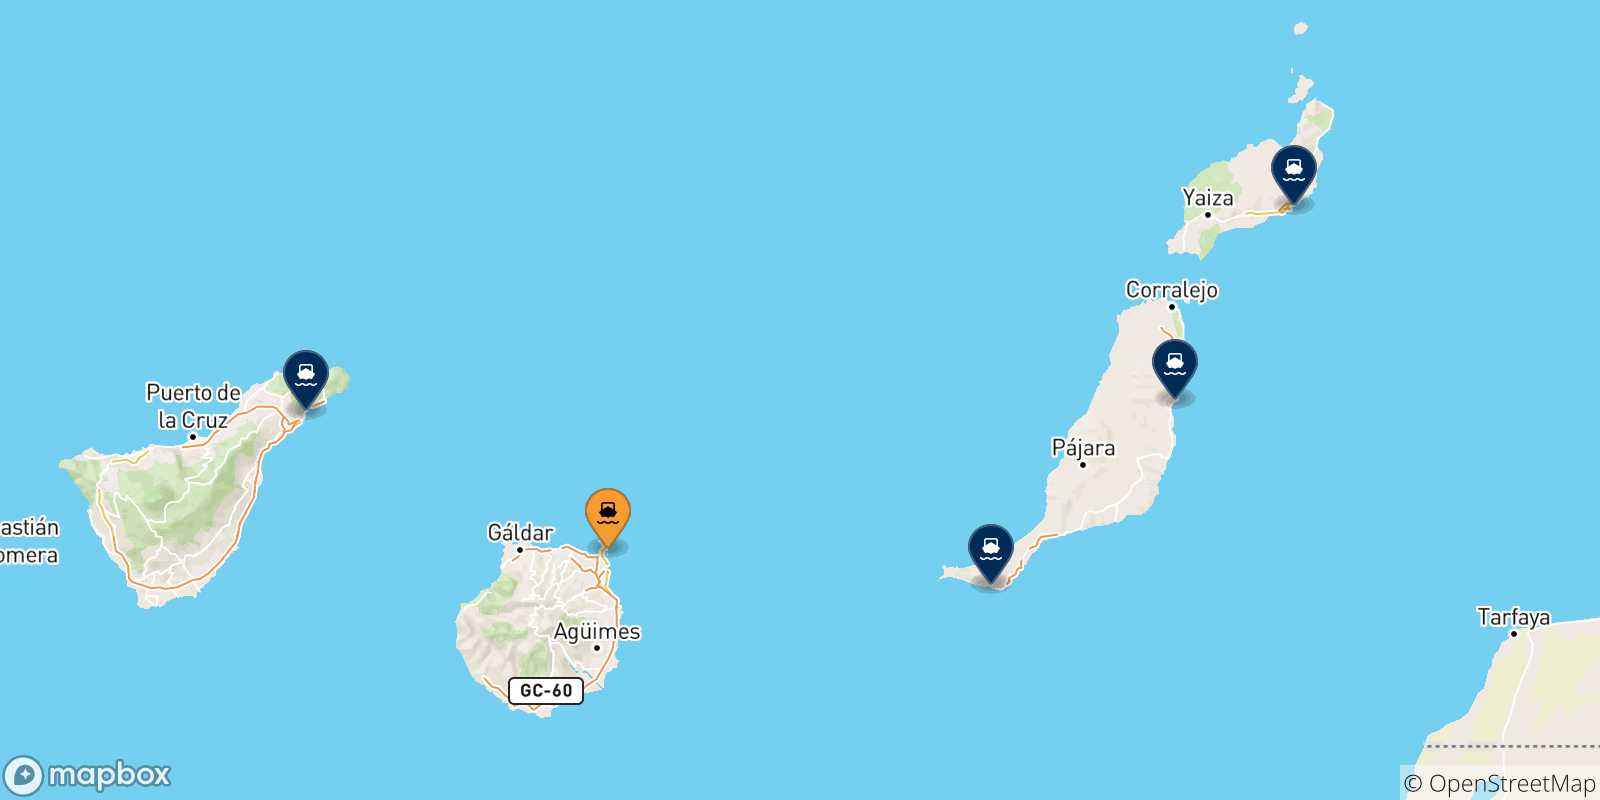 Mappa delle possibili rotte tra Las Palmas De Gran Canaria e le Isole Canarie